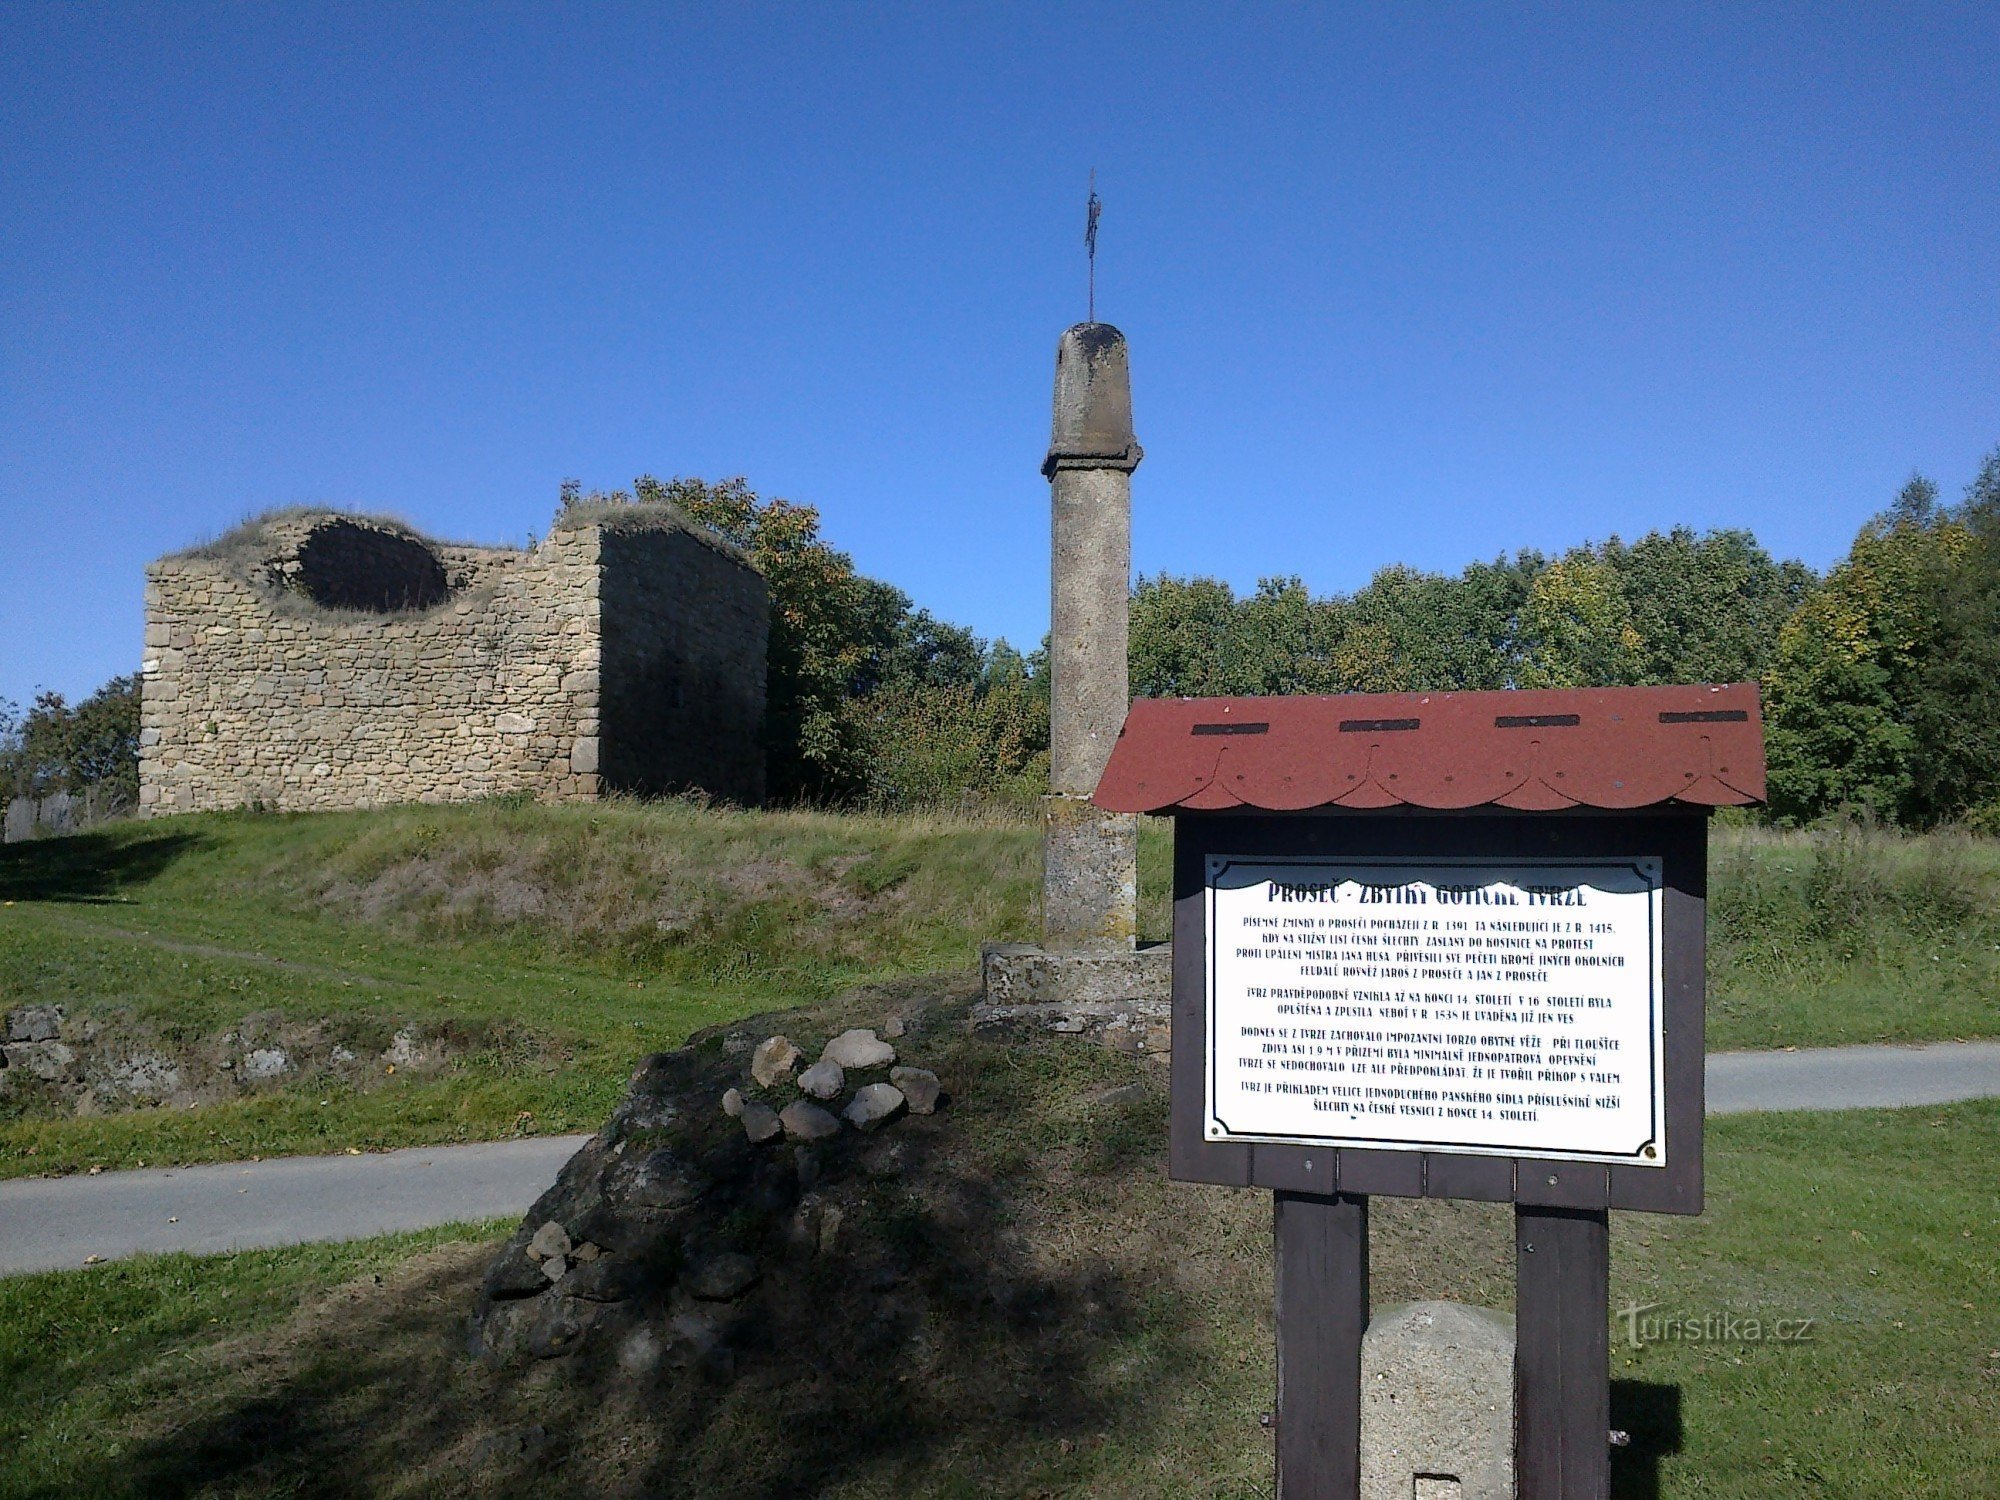 Resti della fortezza di Proseč.